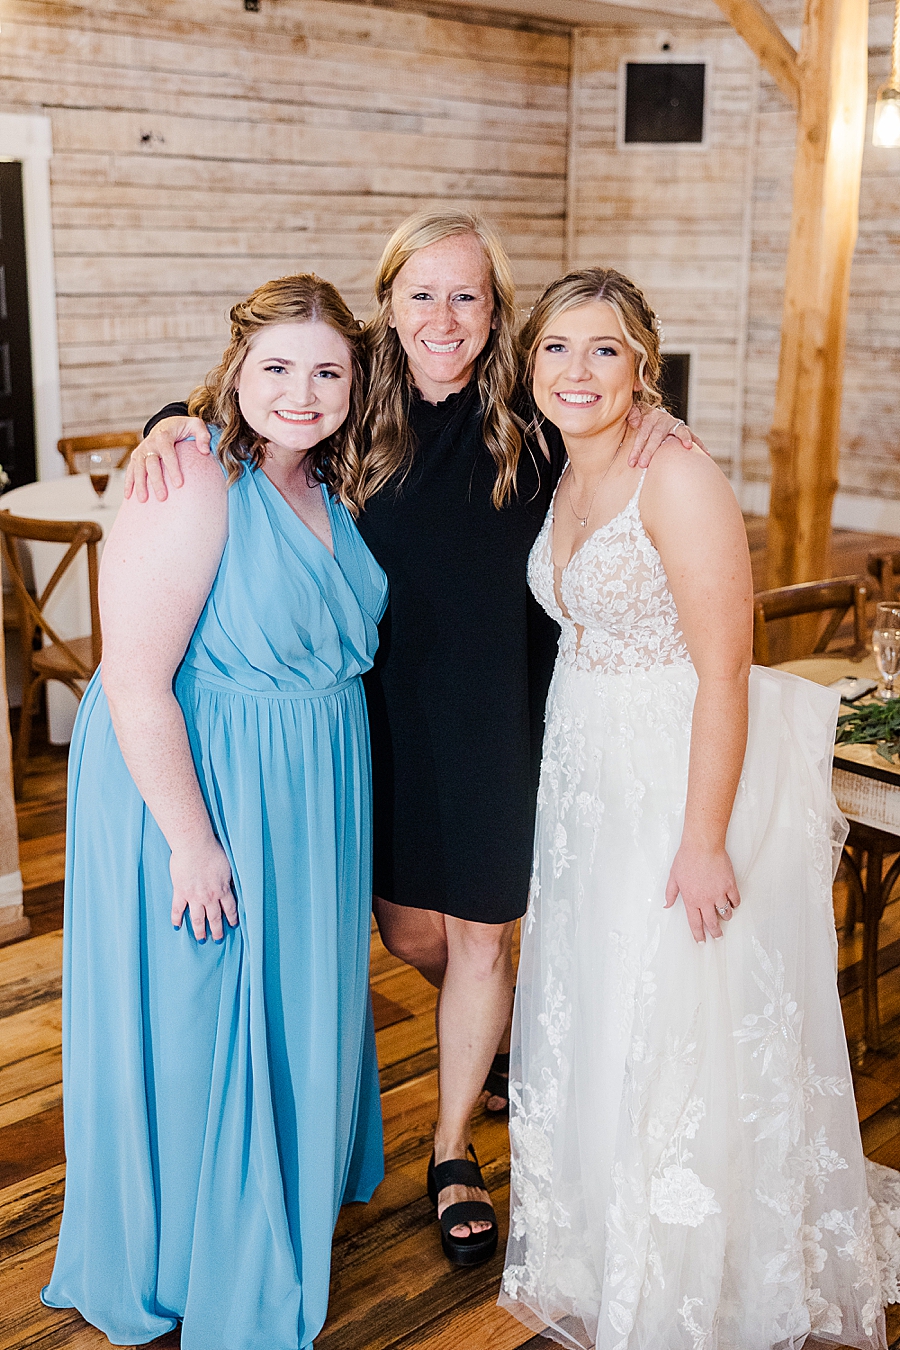 Amanda May with two AMP brides at wedding by Amanda May Photos